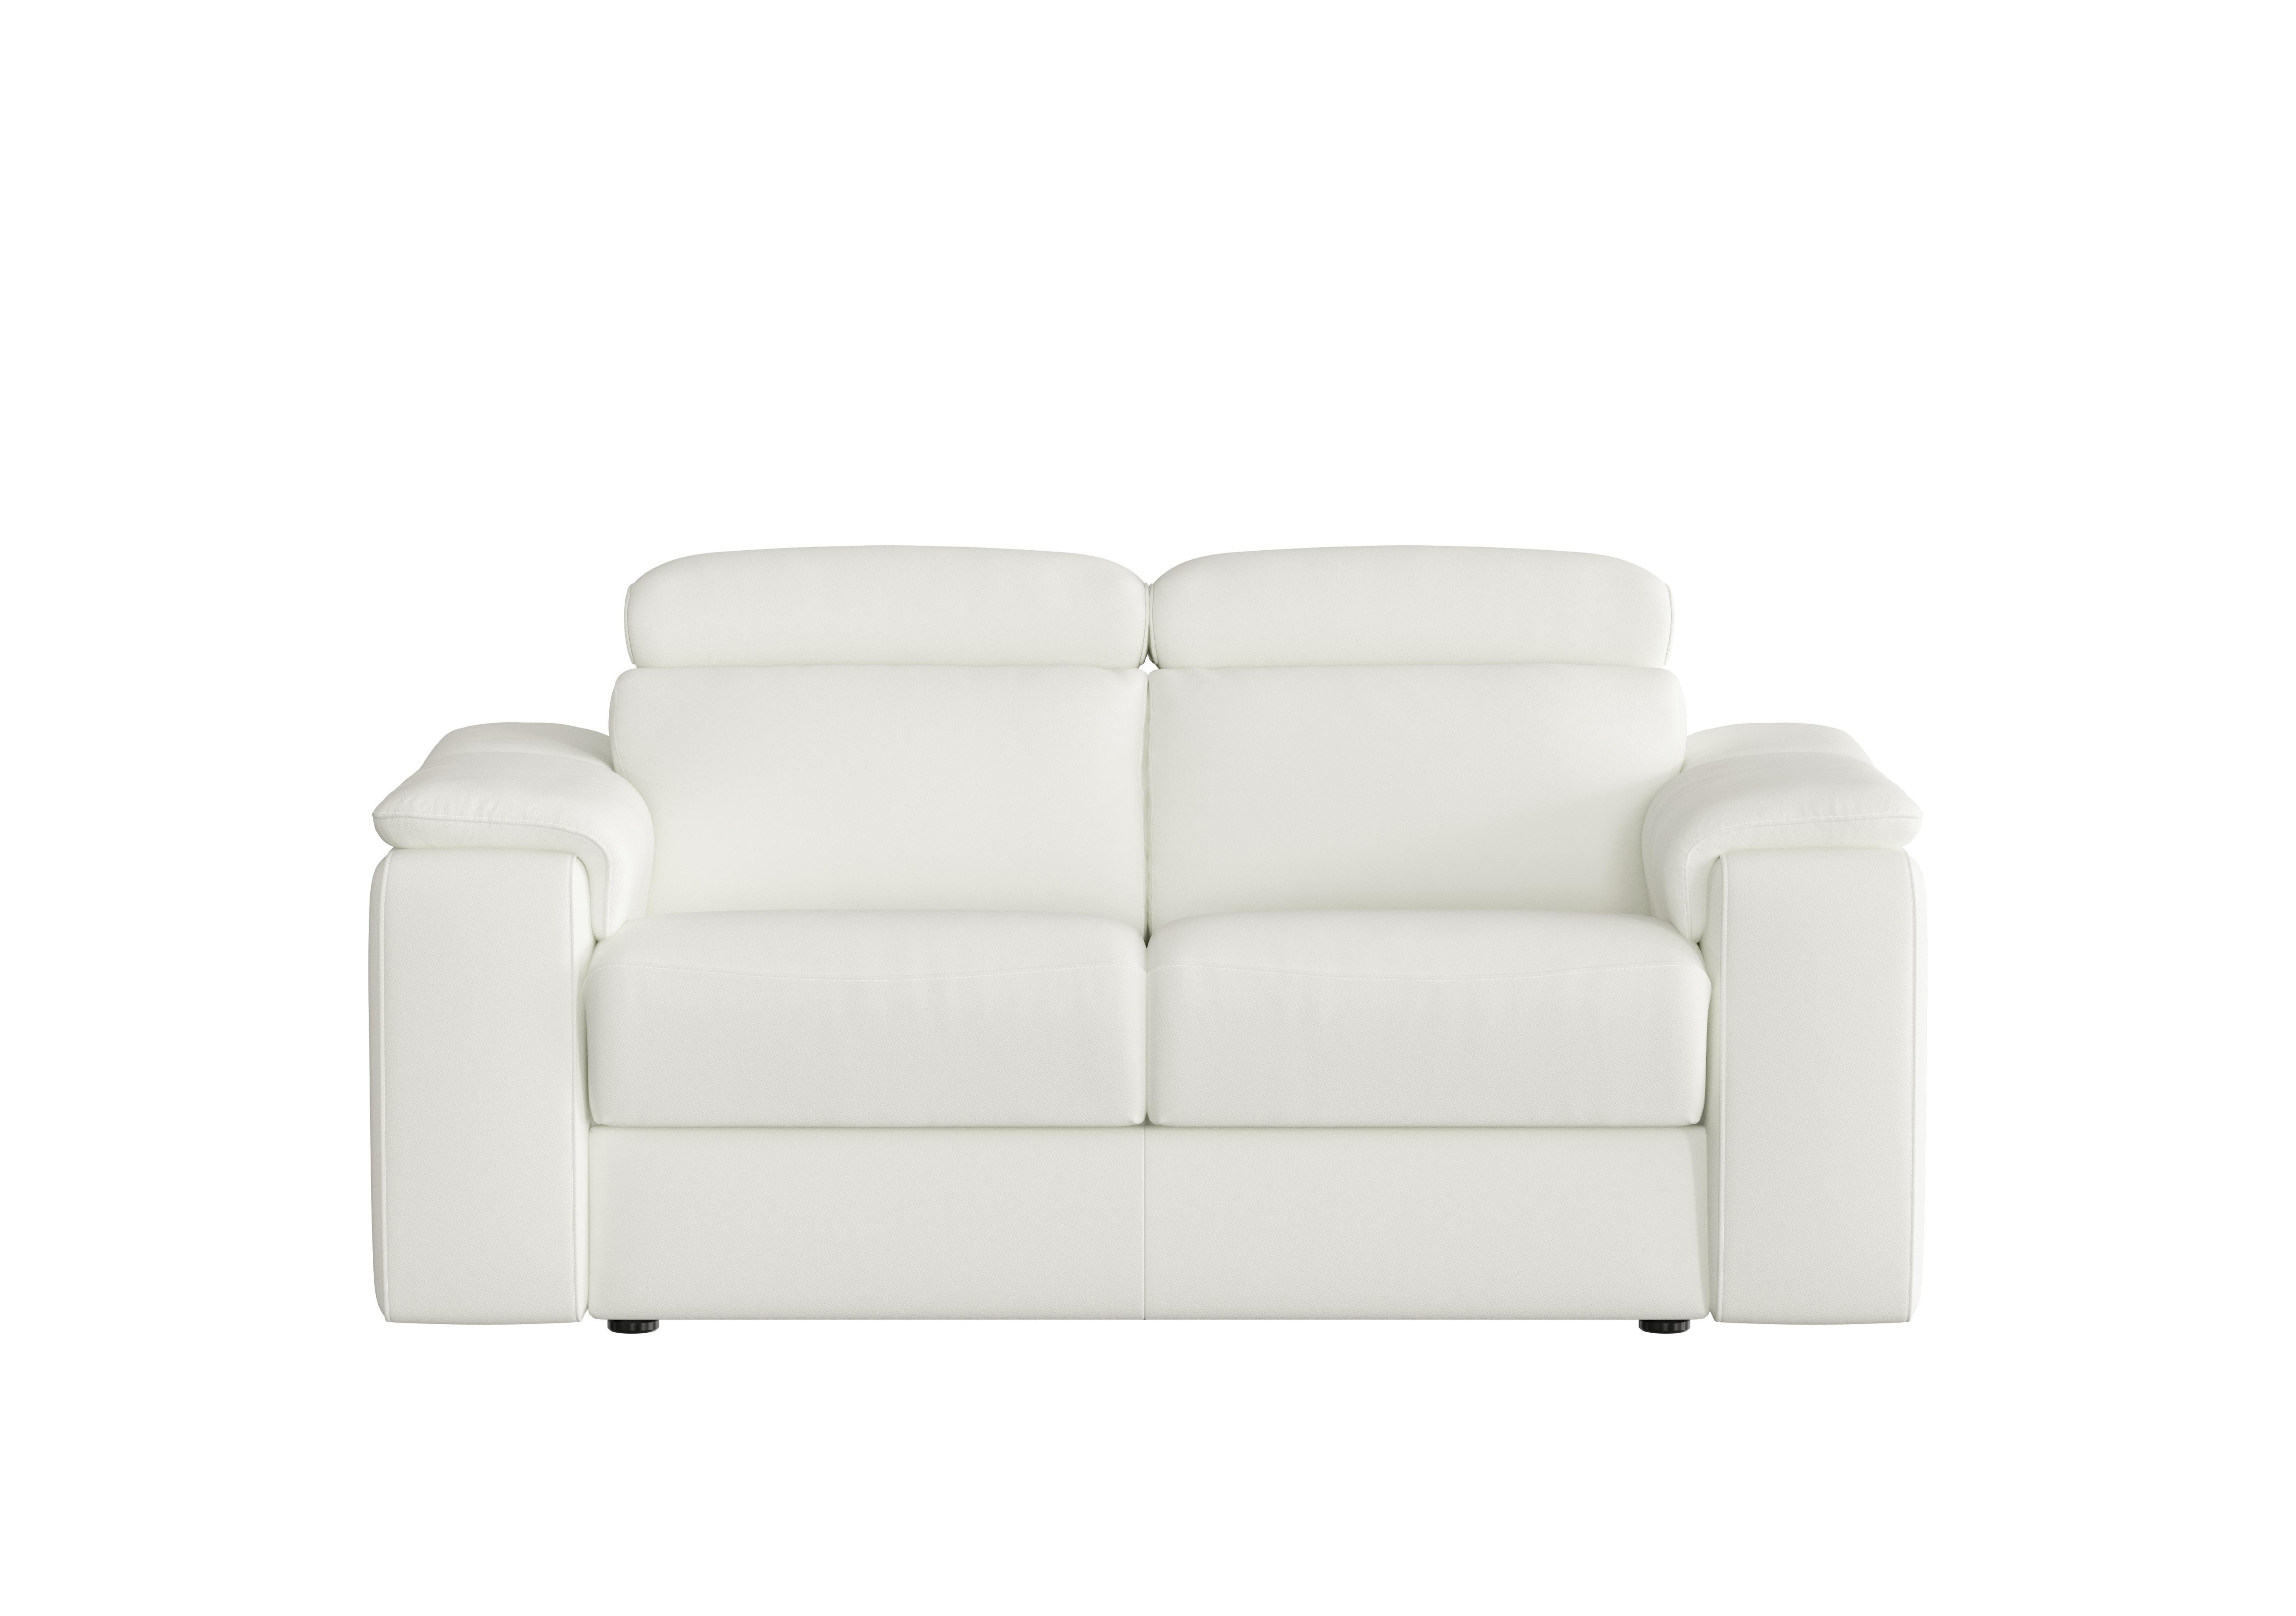 Davide 2 Seater Leather Sofa in 370 Torello Bianco Puro on Furniture Village